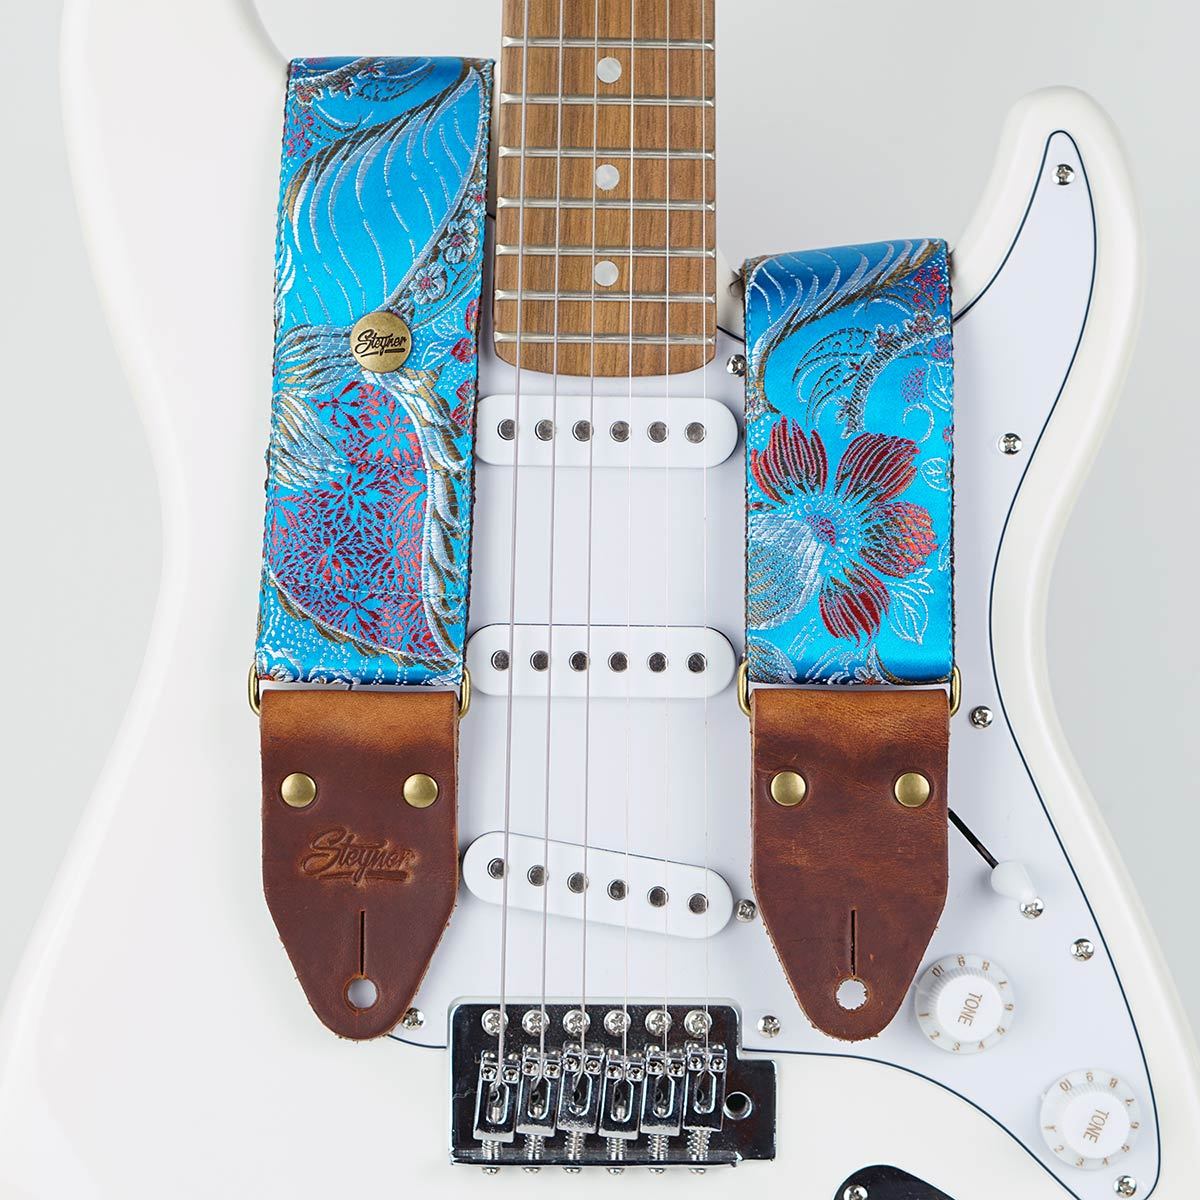 Gitarrengurt blau vintage - retro stil mit Blumen Muster bunt auf einer weißen E Gitarre